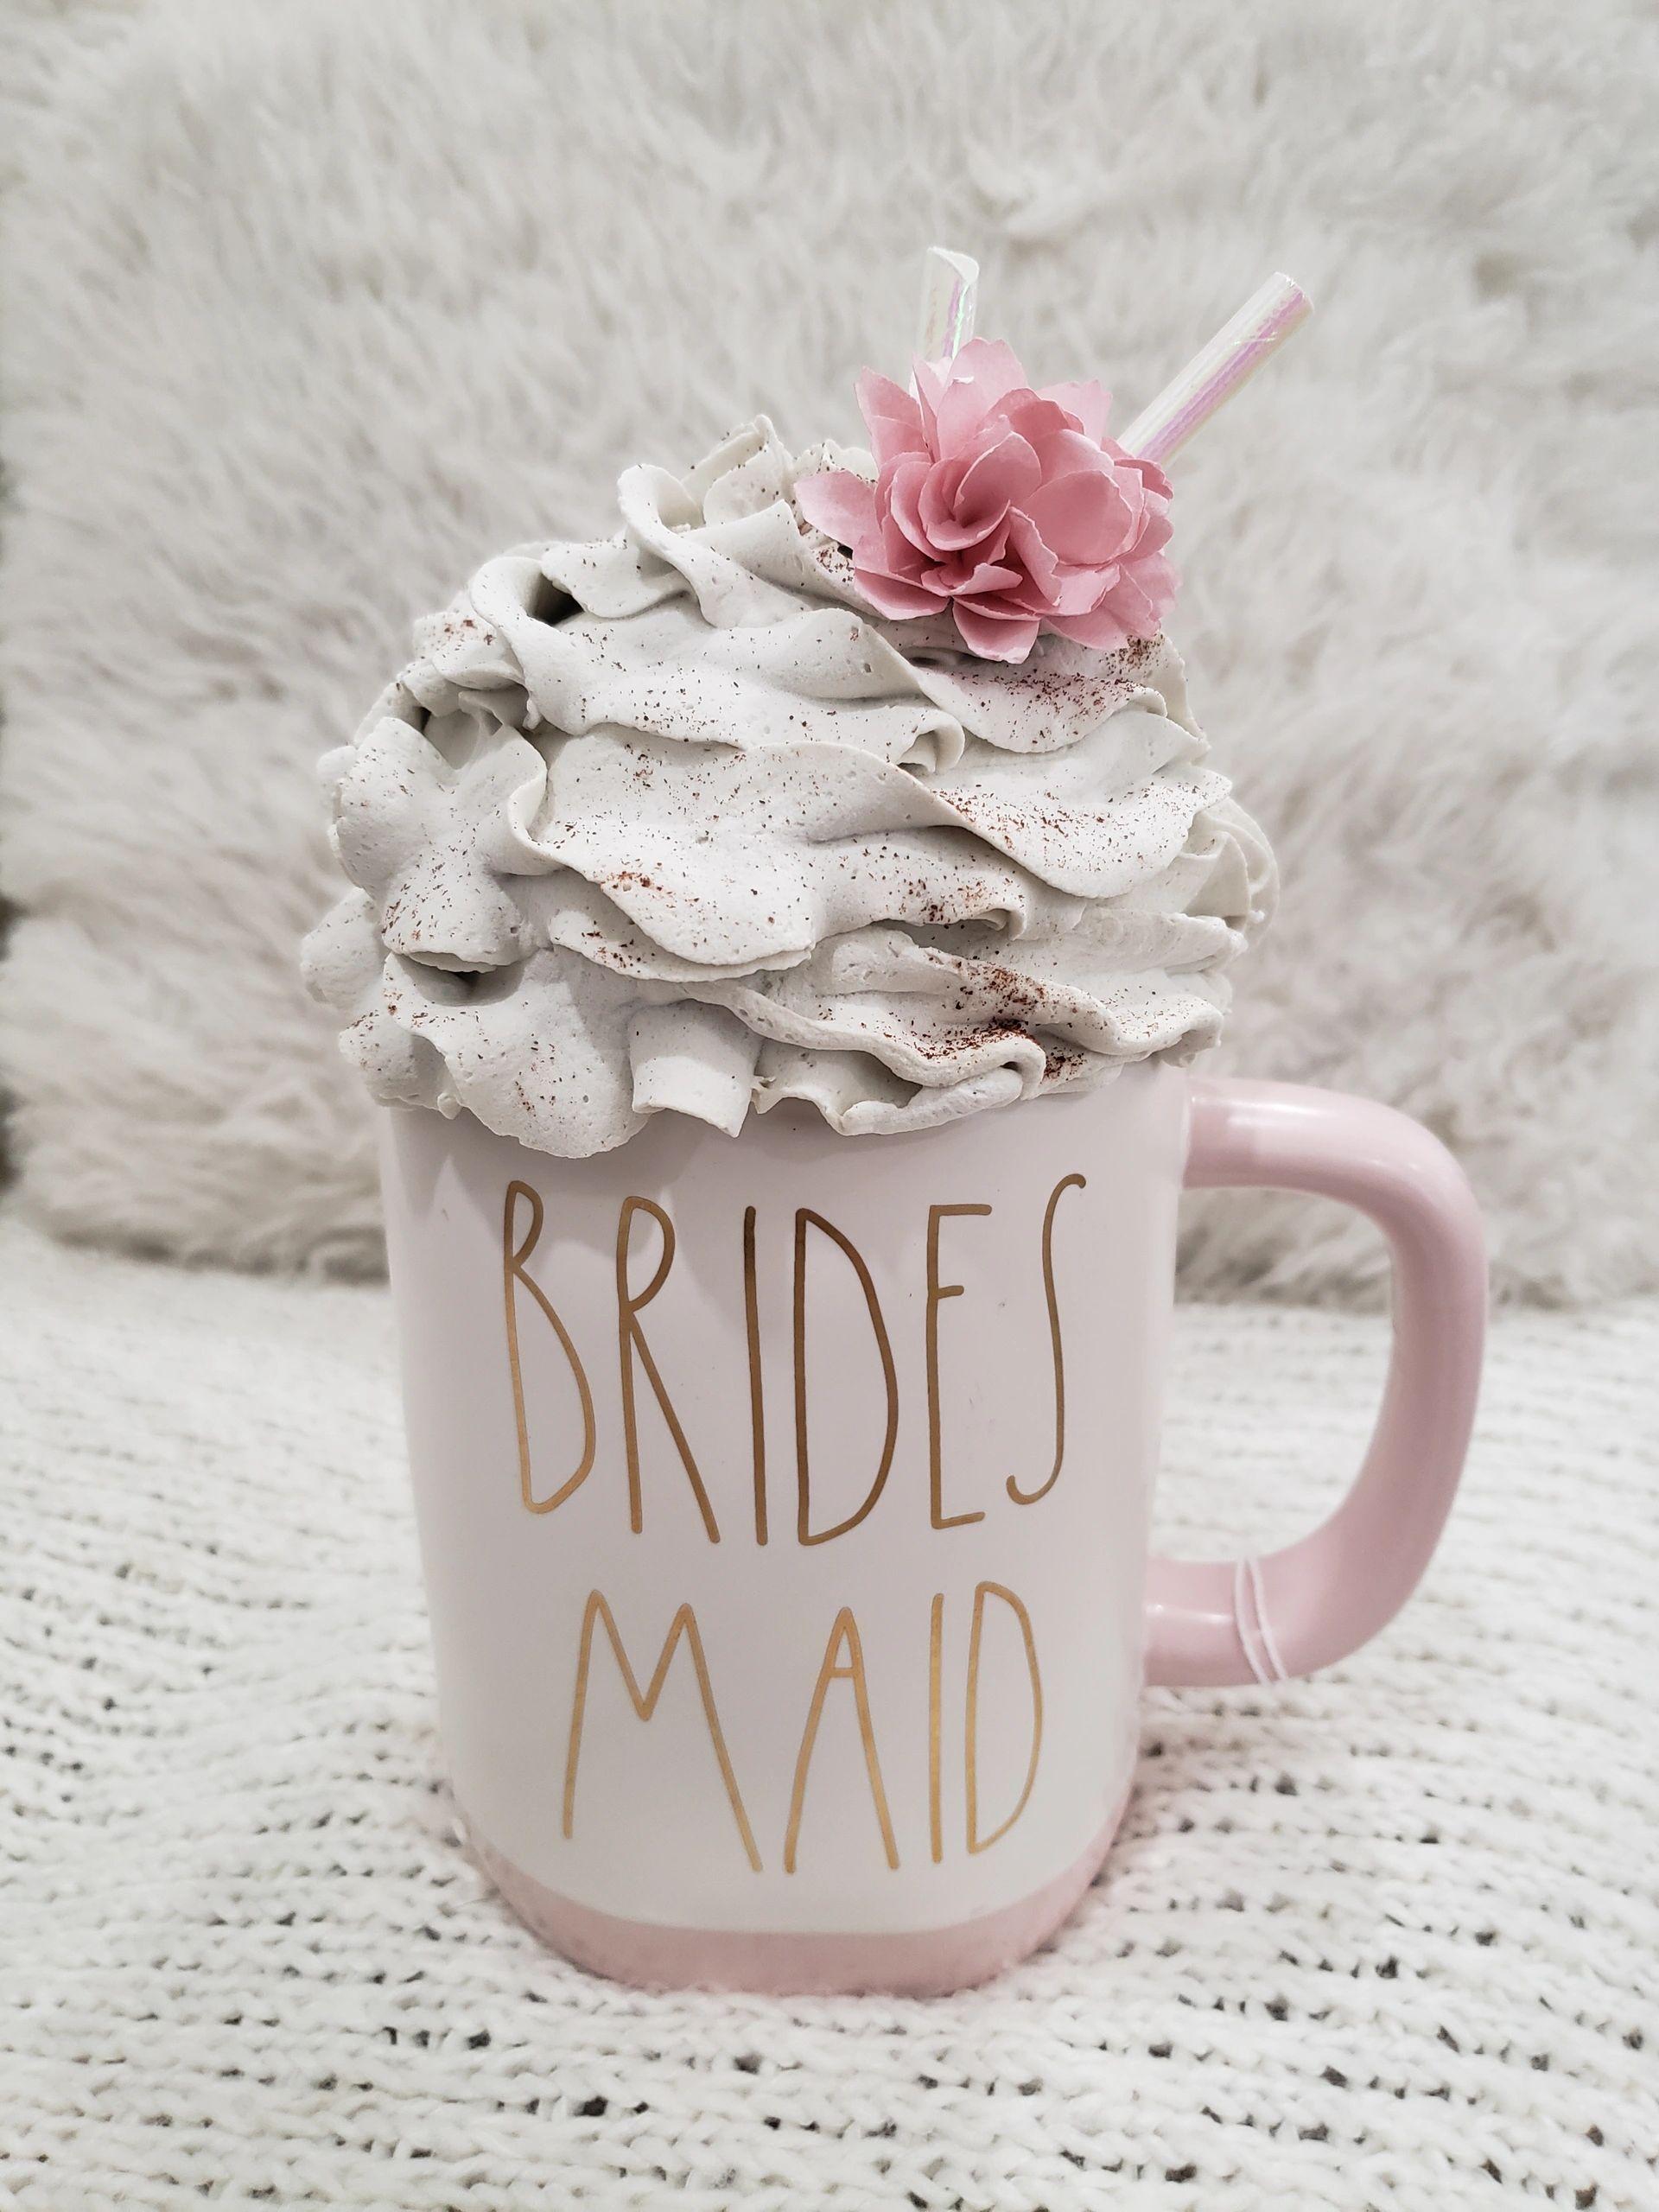 Rae Dunn "Brides Maid" Mug & Pip Posh Designs Faux Sweet Décor Whipped Topper Bridal Collection